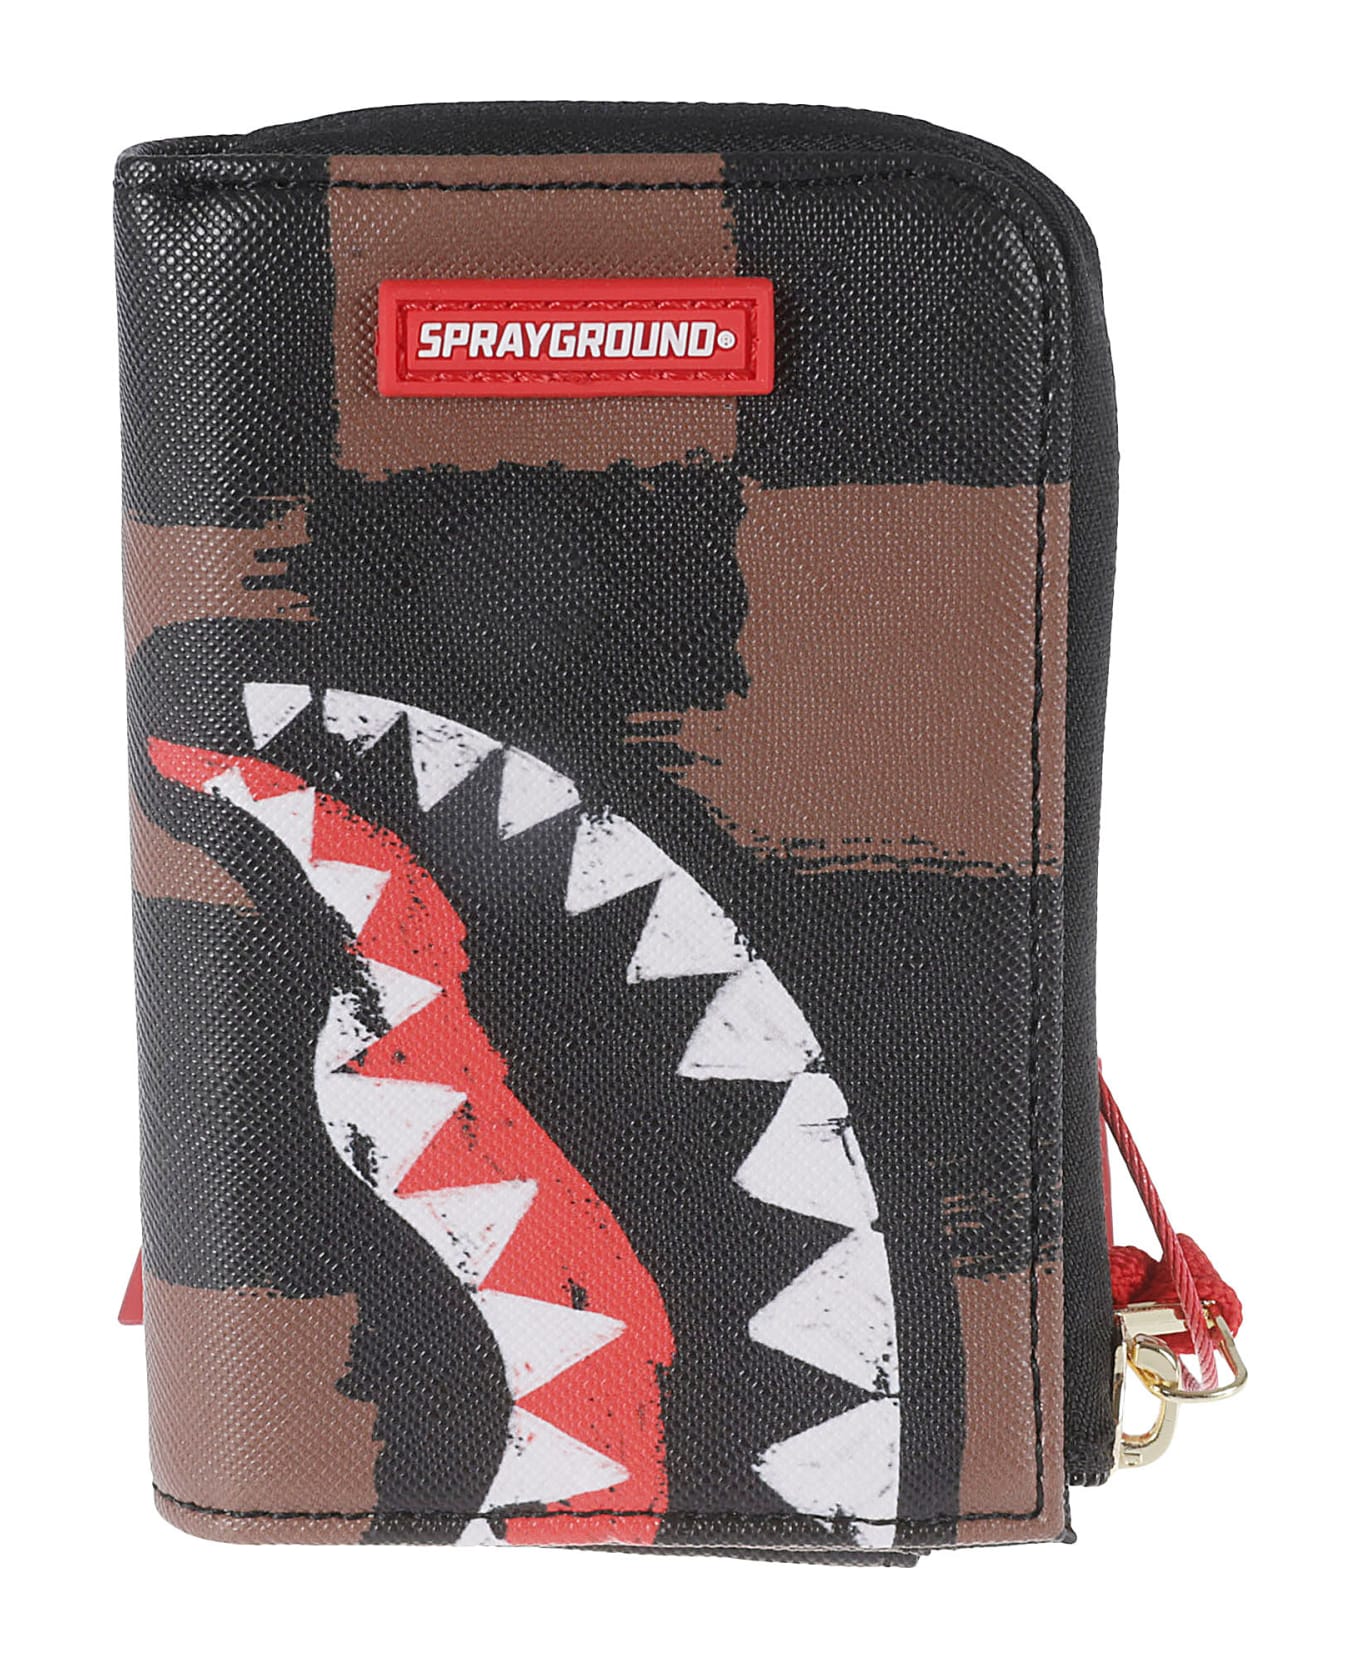 Sprayground Shark Zip-around Wallet - Brown